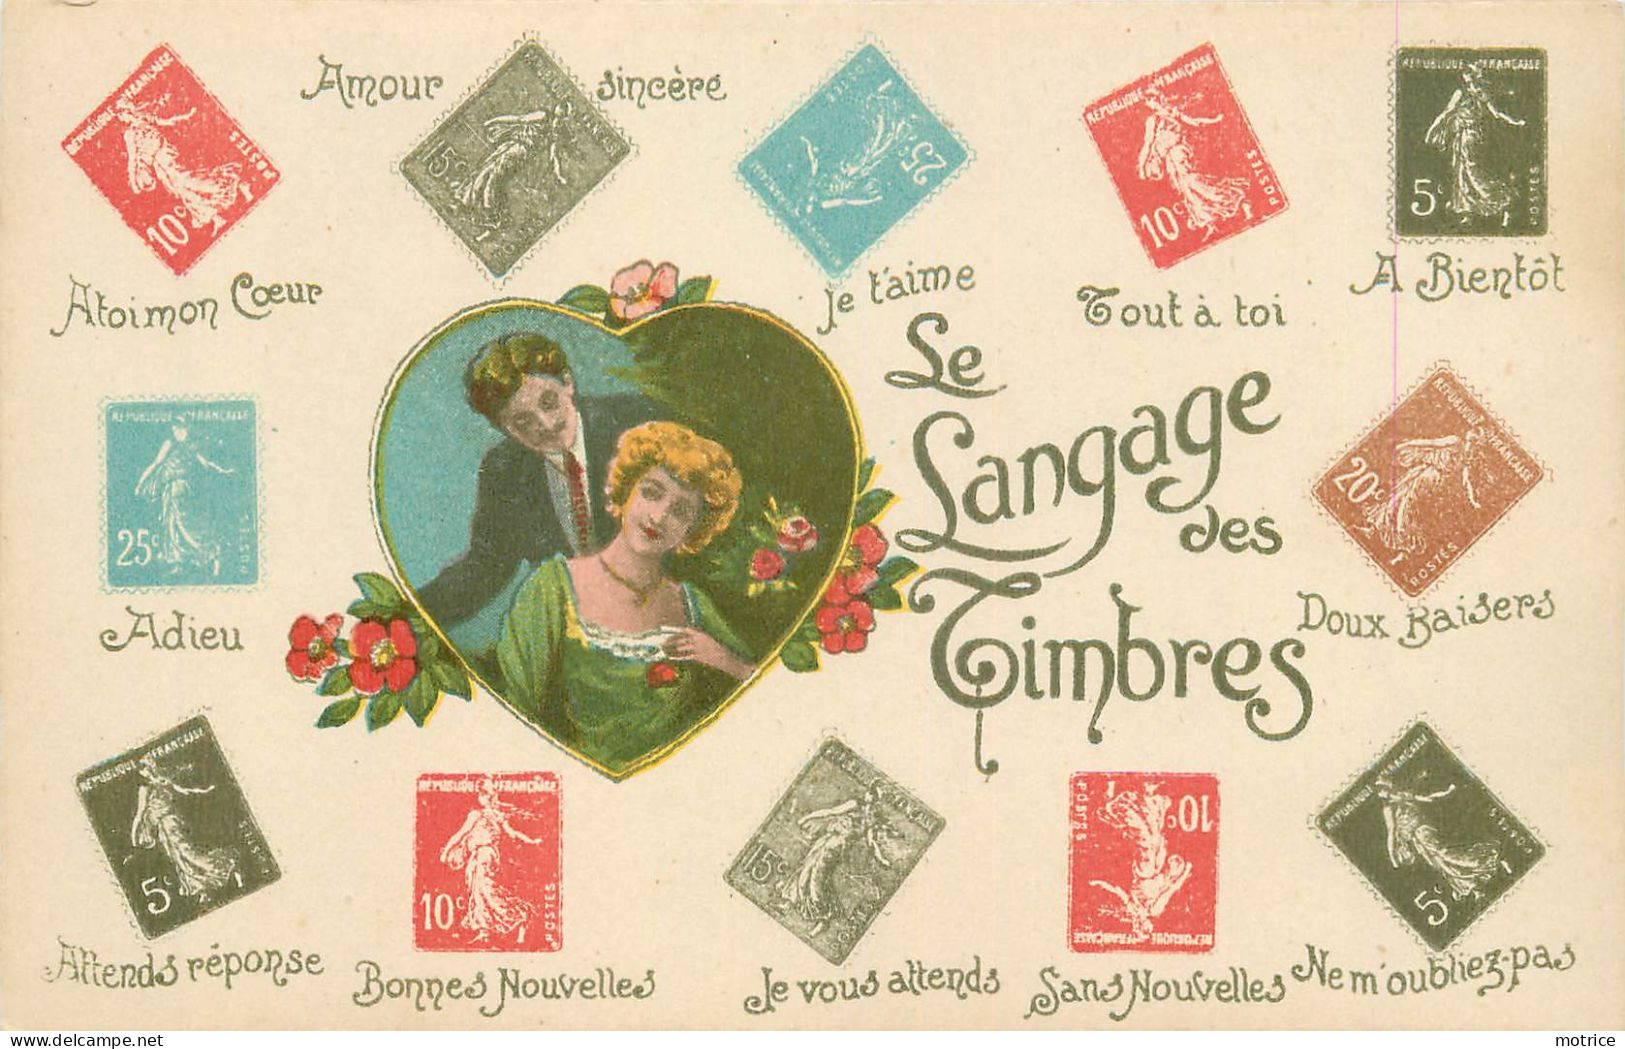 LANGAGE DES TIMBRES -  lot de 10 cartes fantaisies.